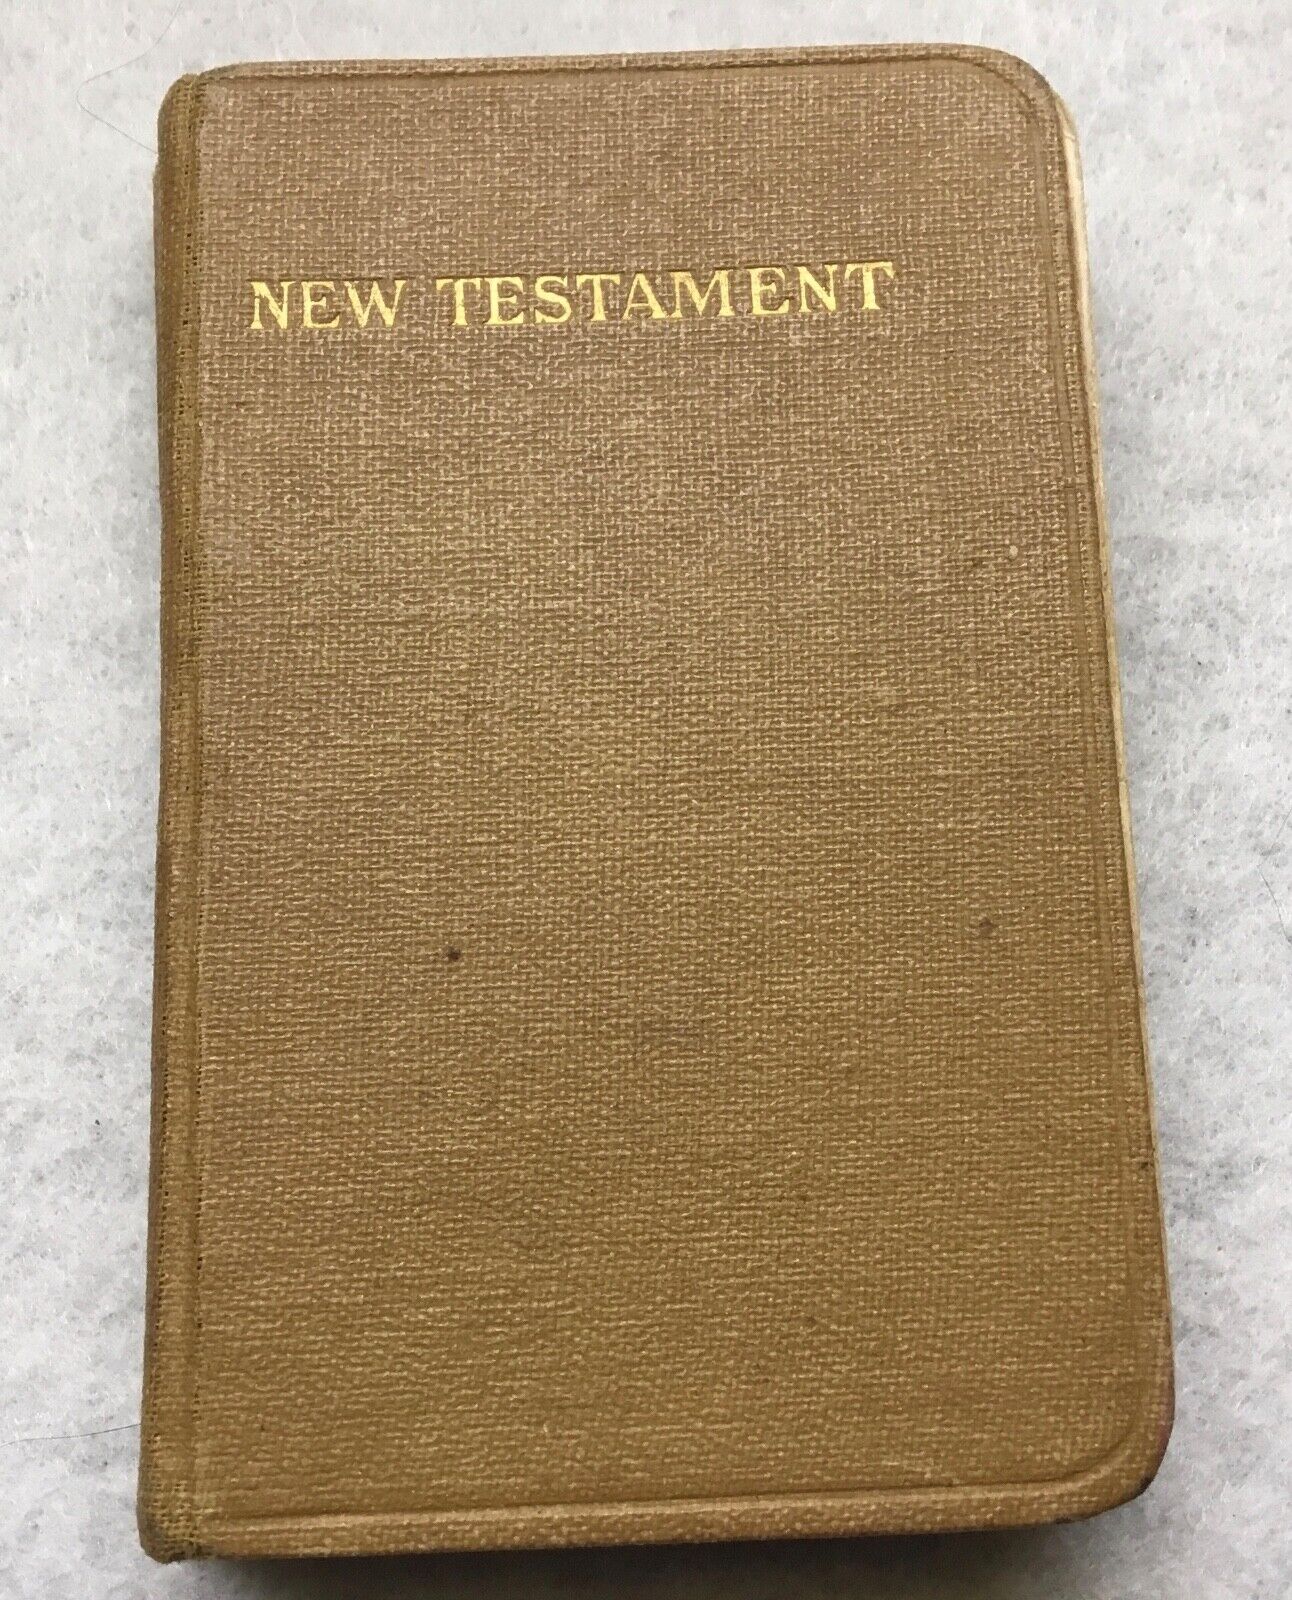 Vintage 1900s Pocket New Testament Bible Pocket Testament League Dated 1918